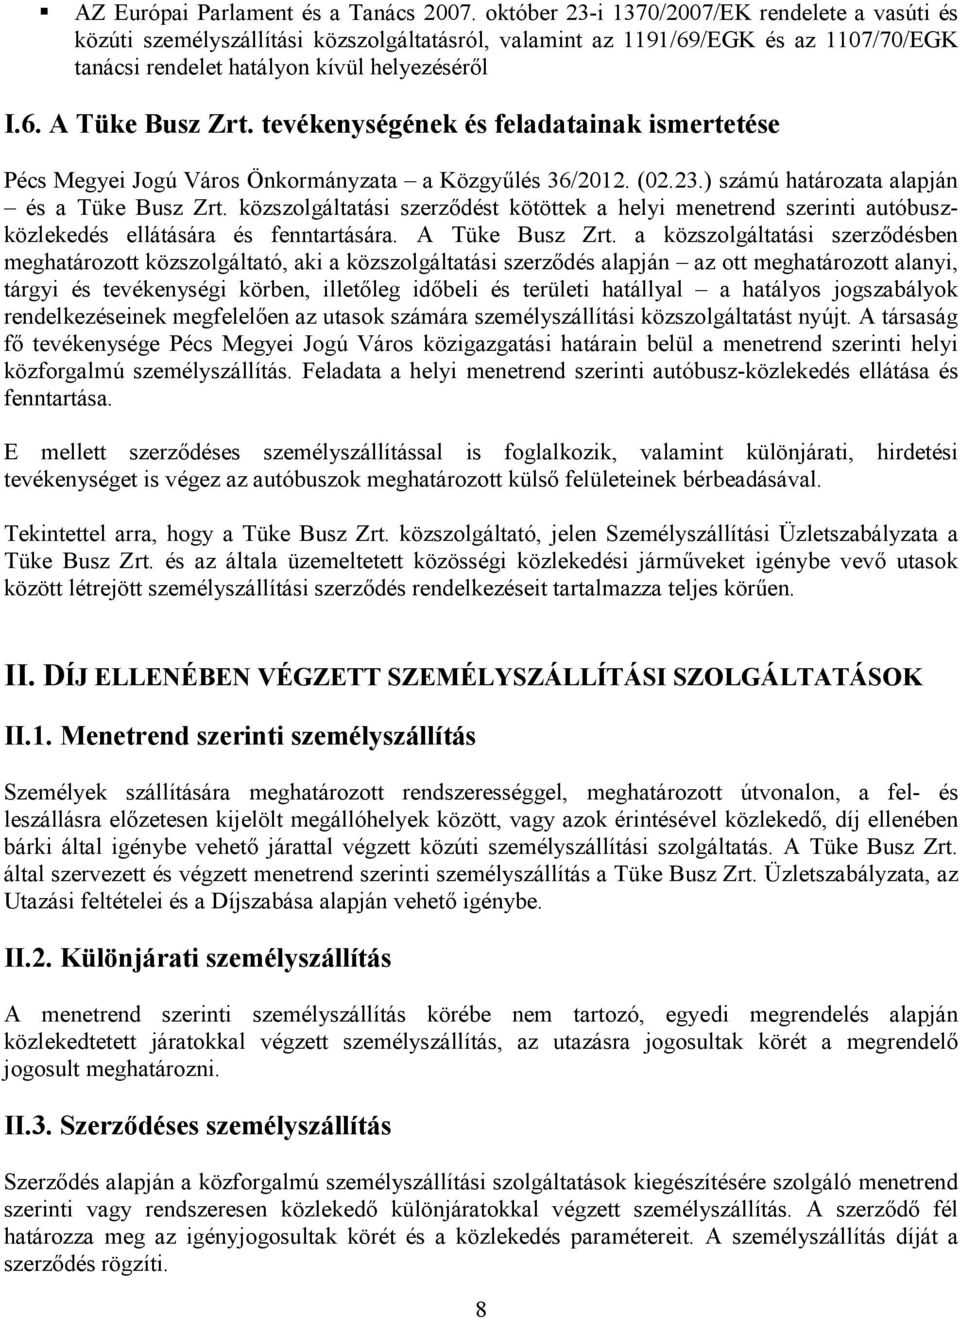 tevékenységének és feladatainak ismertetése Pécs Megyei Jogú Város Önkormányzata a Közgyűlés 36/2012. (02.23.) számú határozata alapján és a Tüke Busz Zrt.